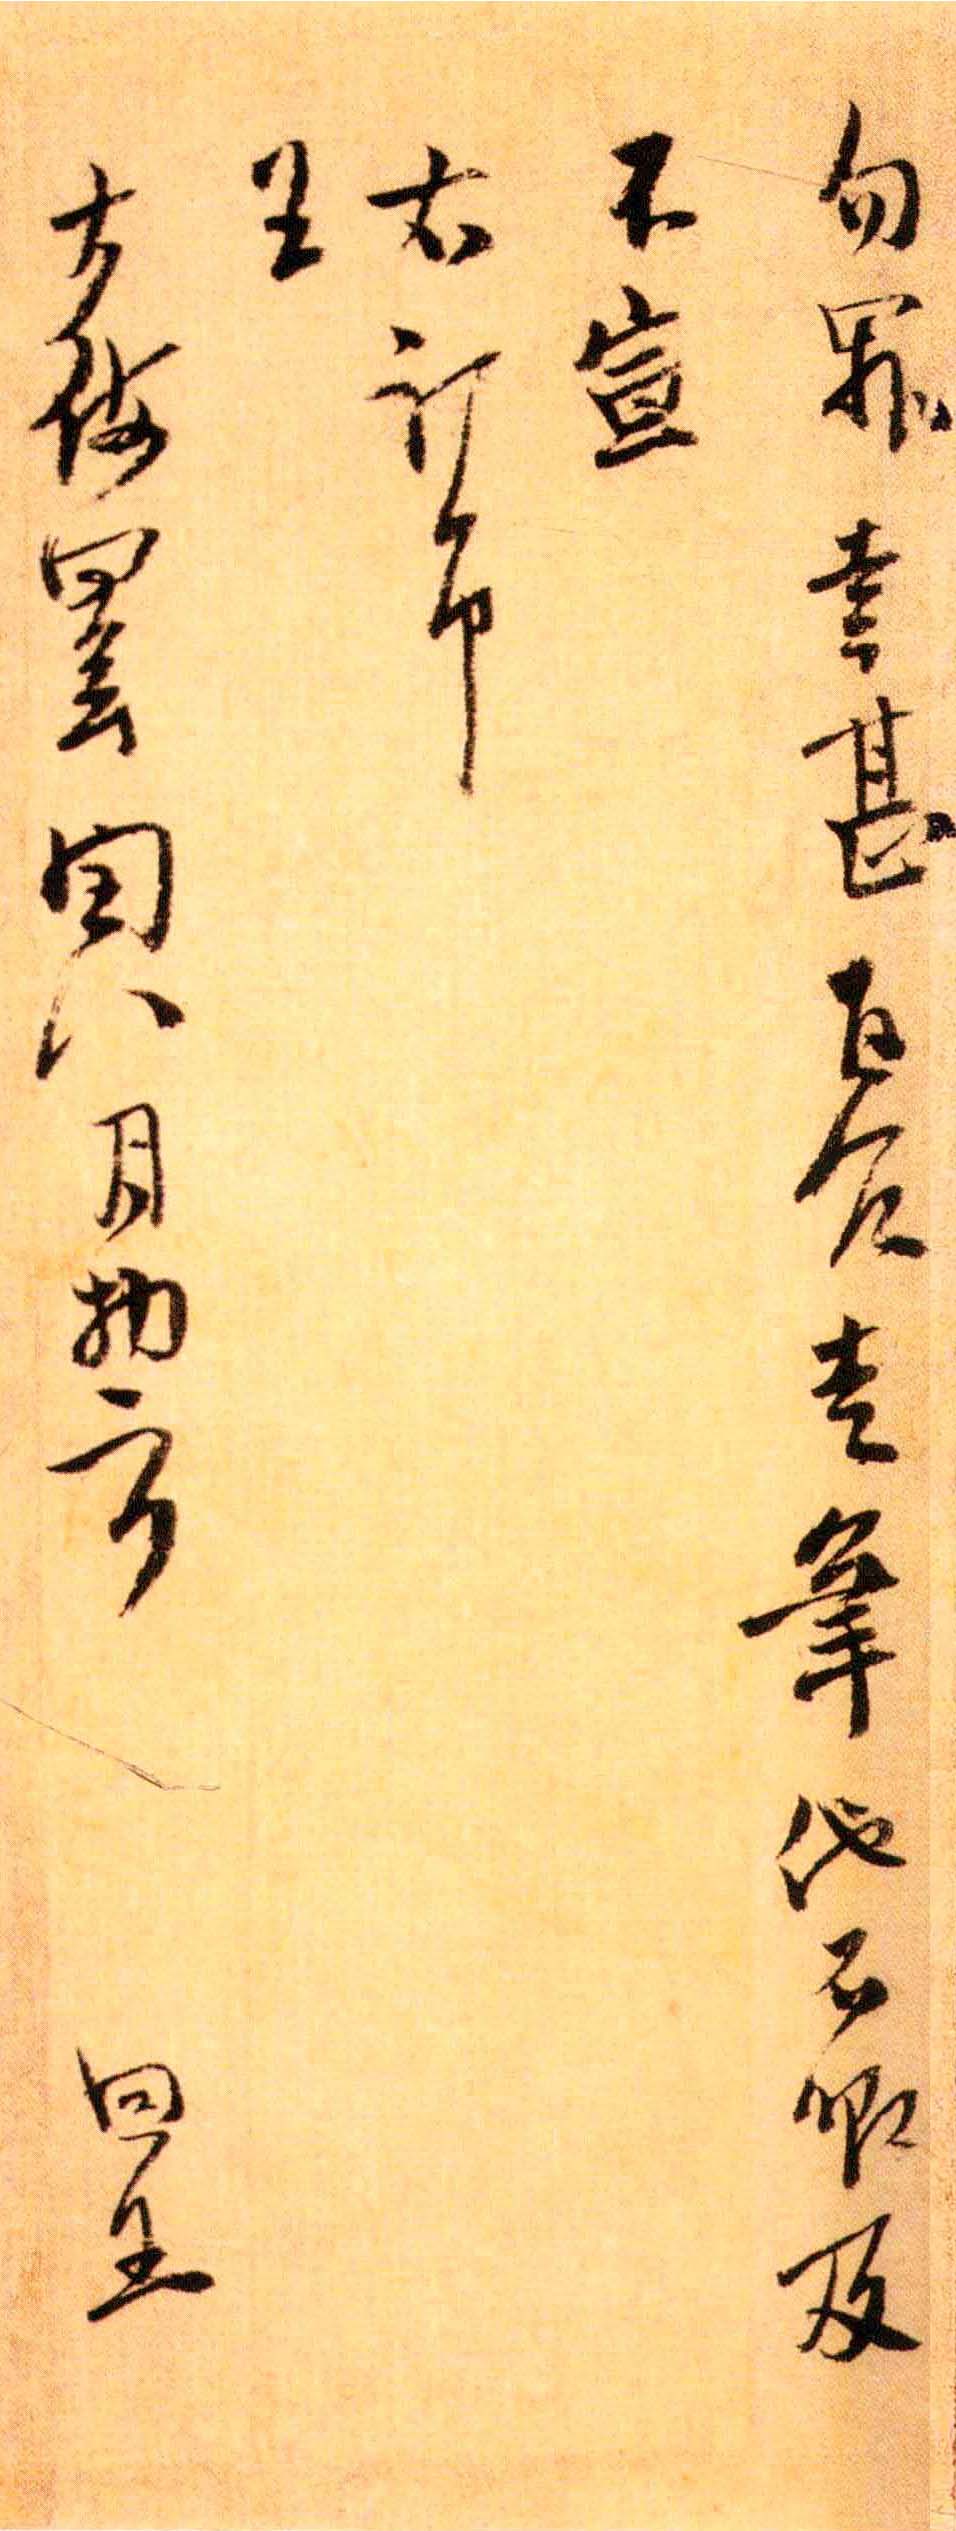 方回行书《台翰帖》-东京国立博物馆藏(图4)